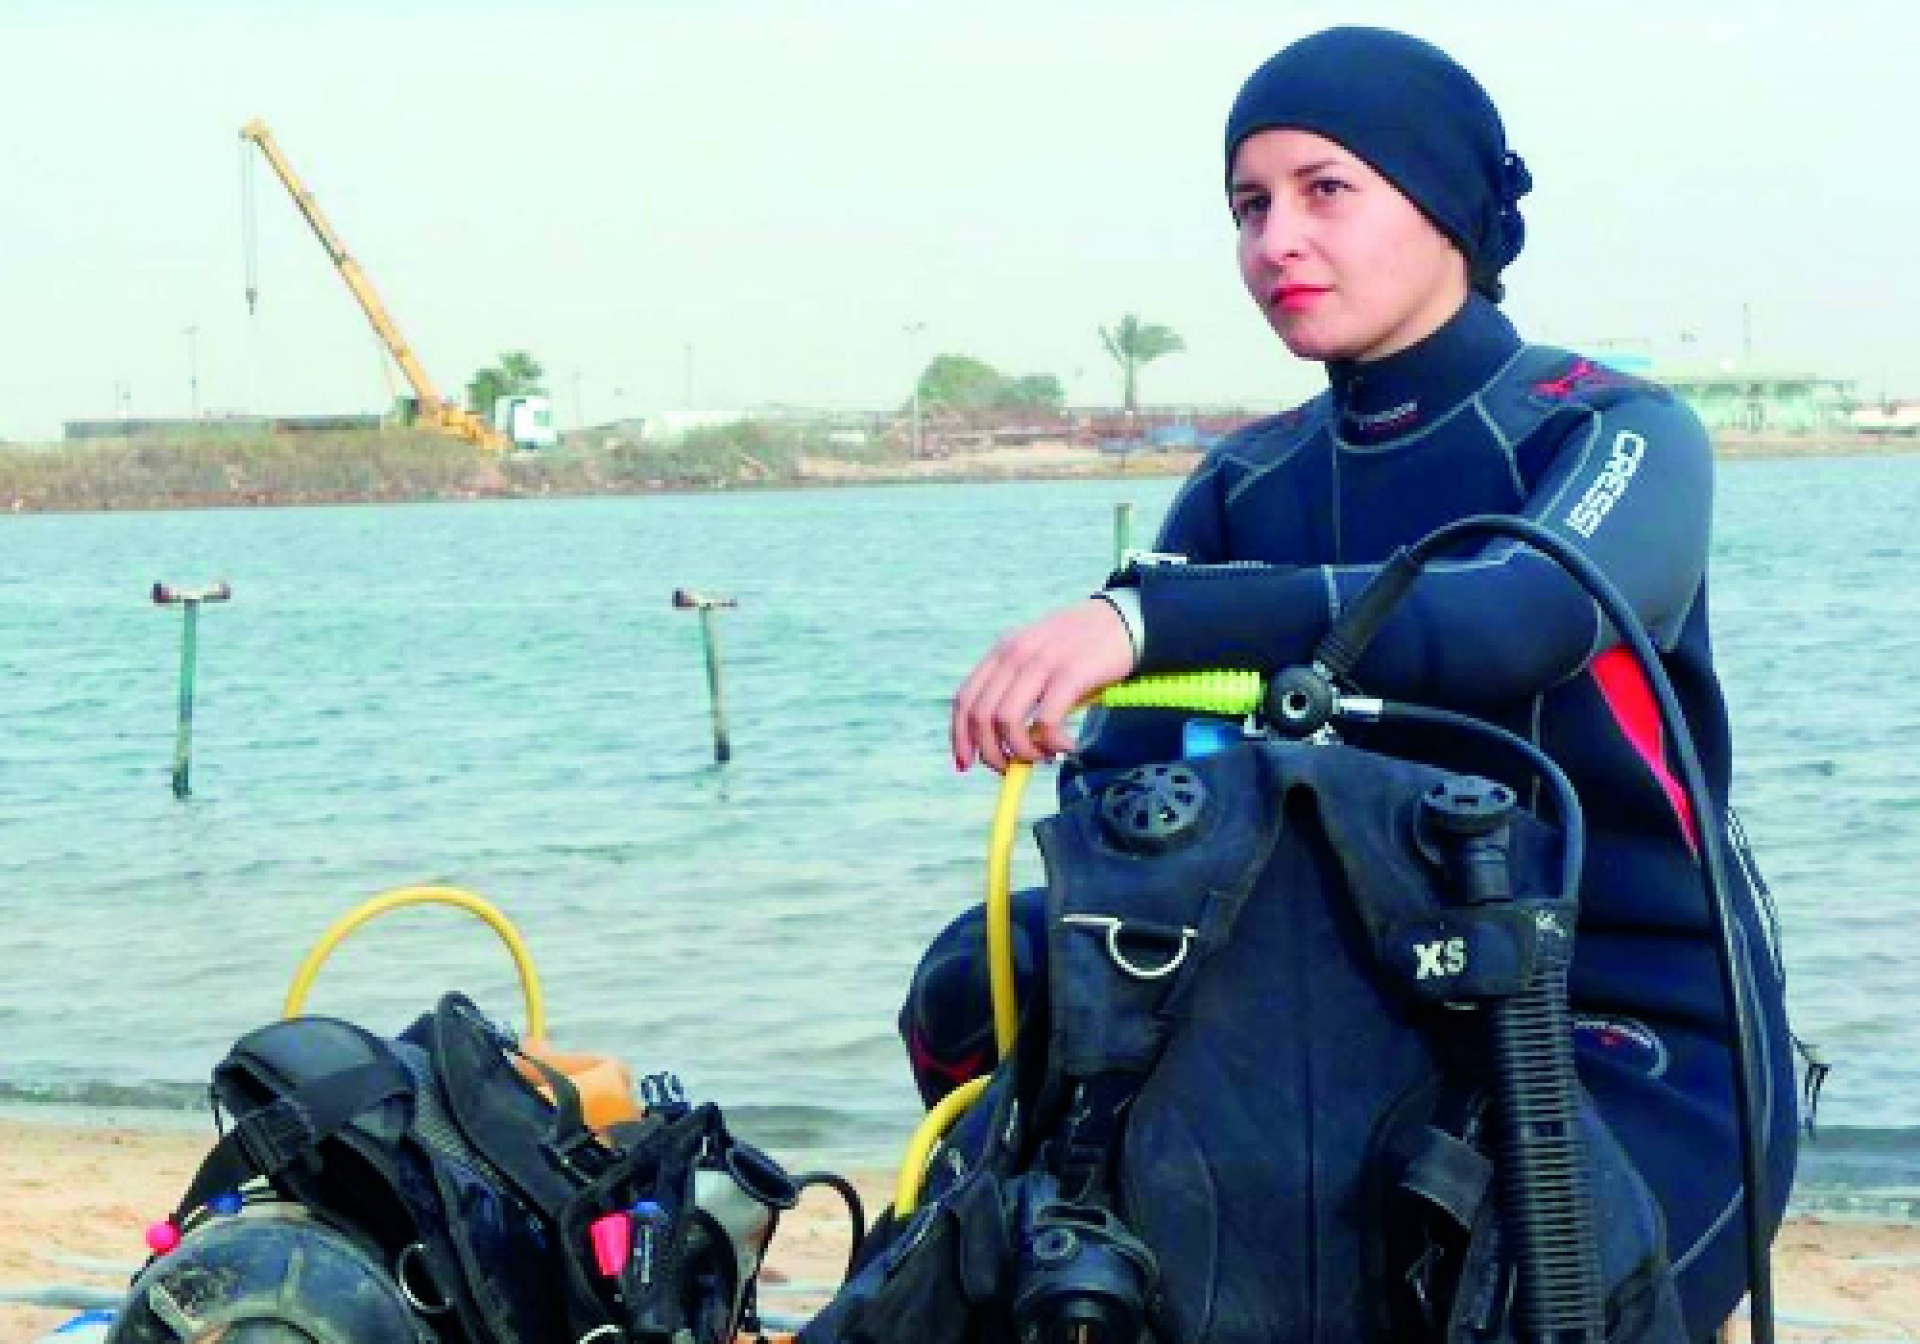 أول مهندسة لحام تحت الماء في الوطن العربي بسنت البستاوي تقدمت للعمل في شركات كثيرة فر فضت لمجرد أنني فتاة Laha Magazine